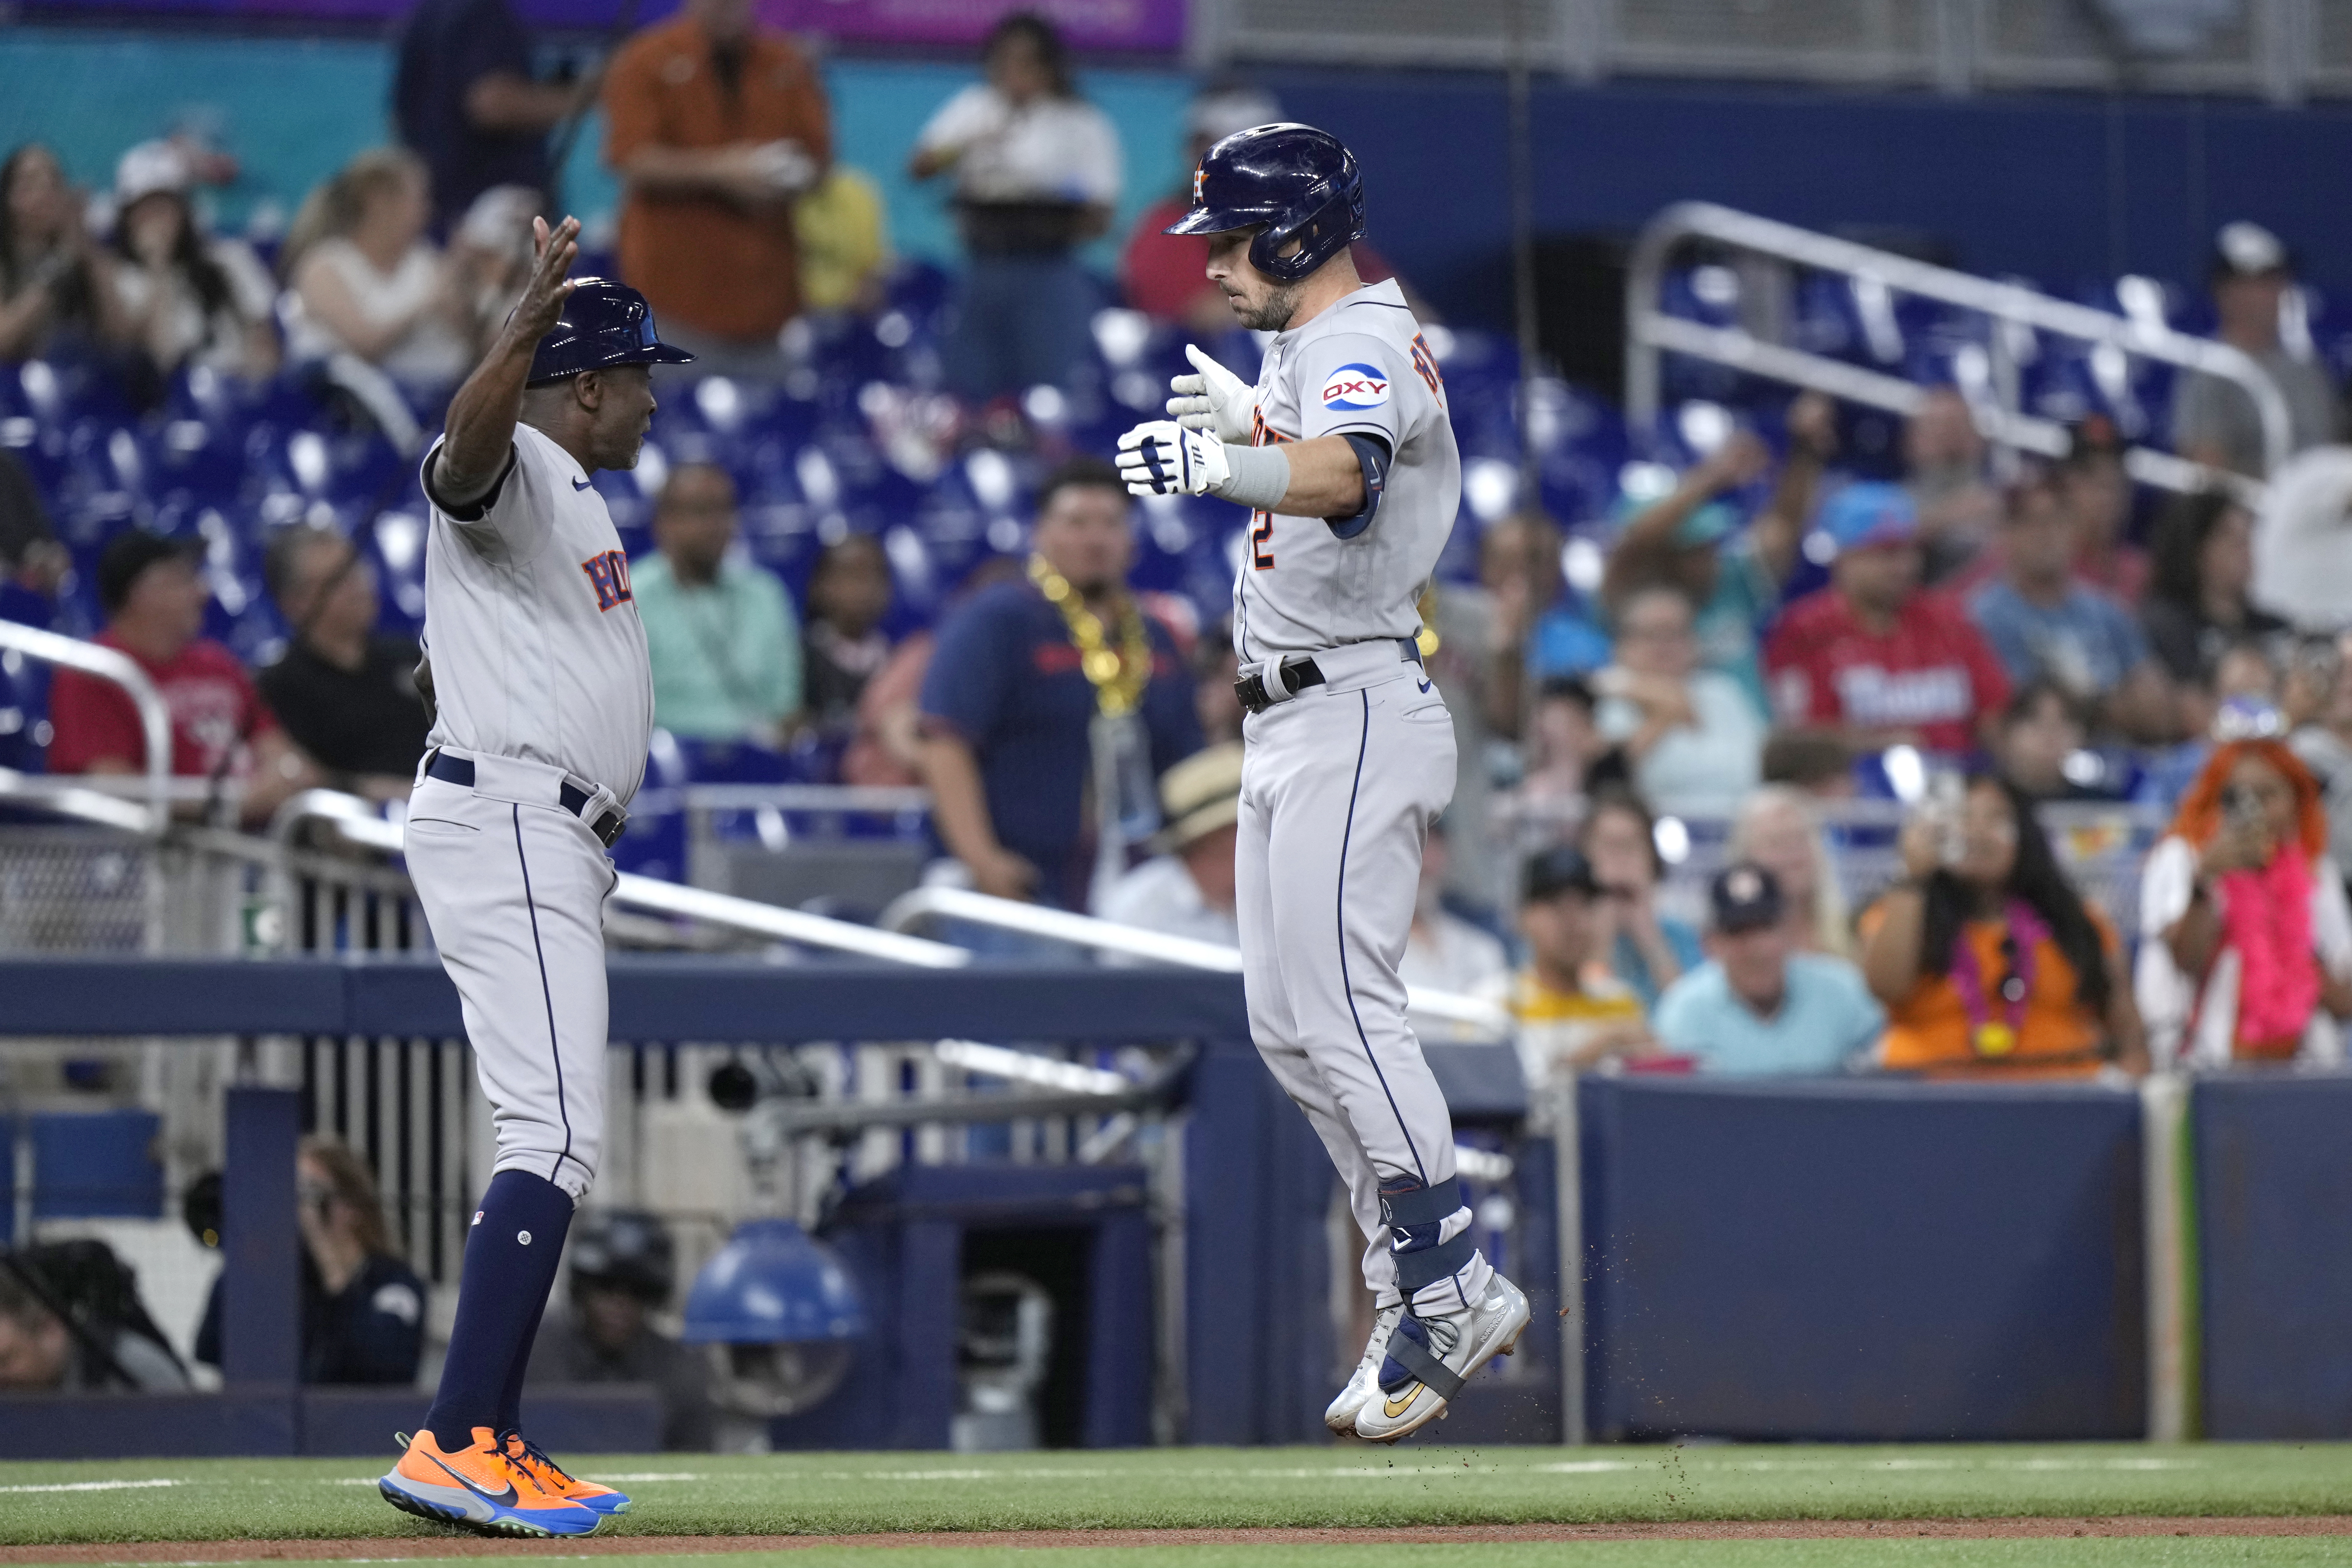 Alvarez breaks open Game 6 with massive three-run home run